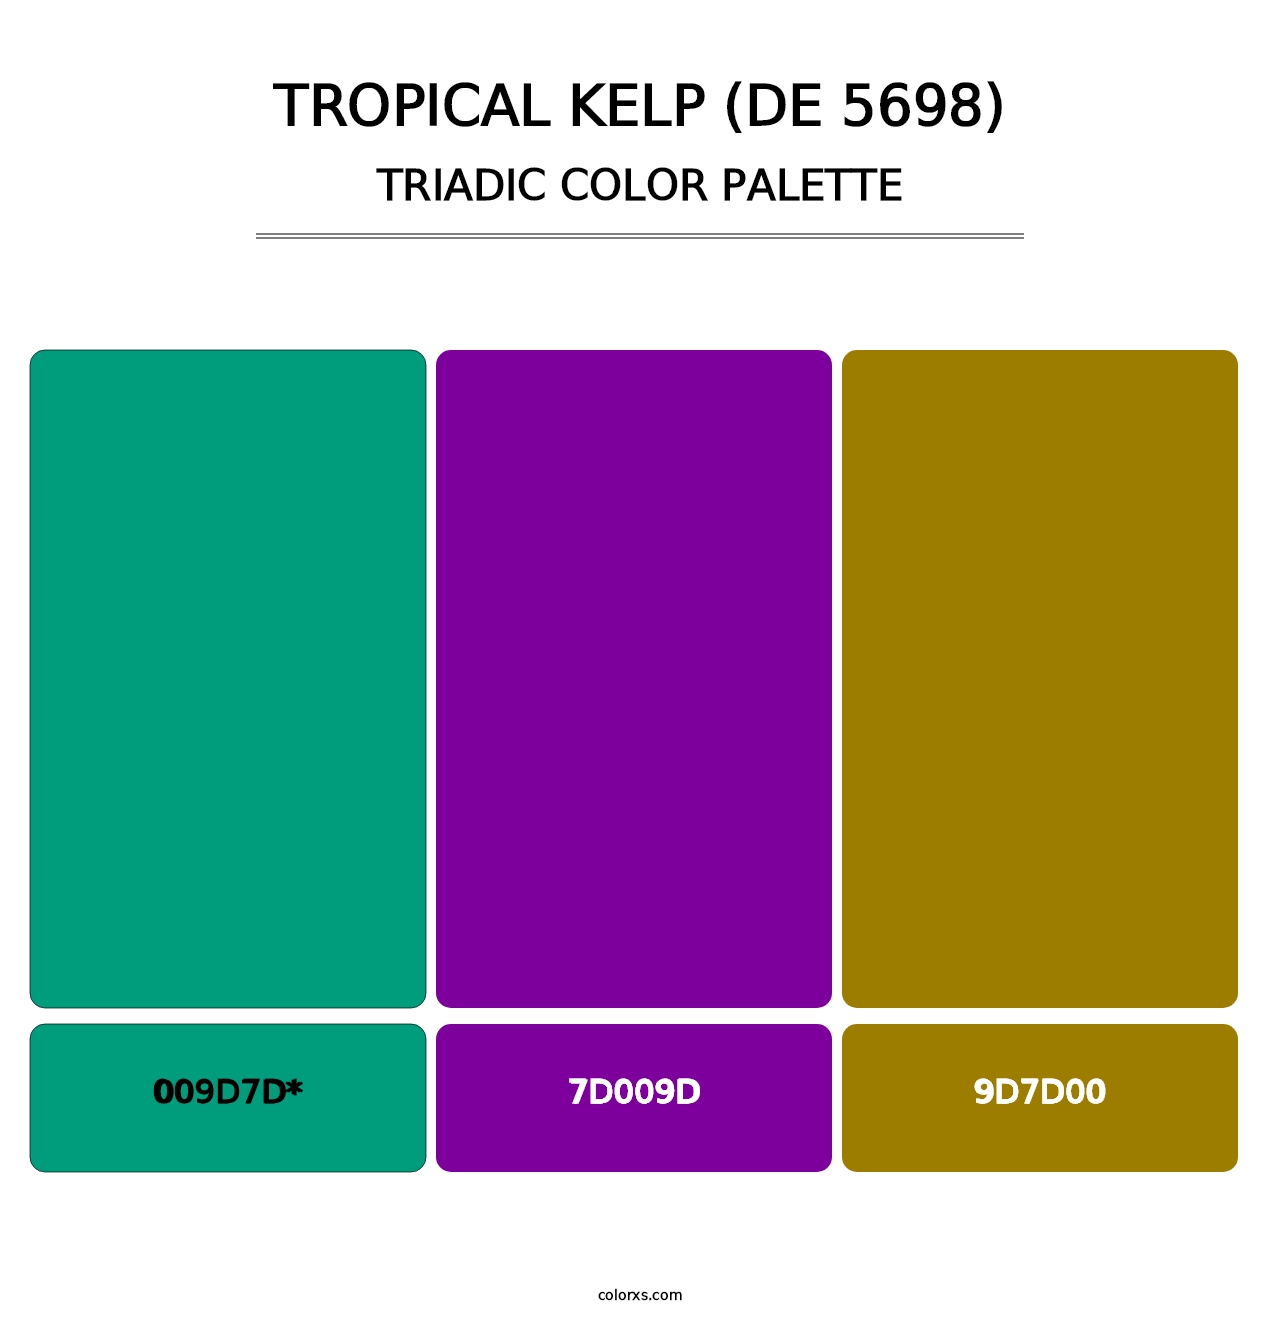 Tropical Kelp (DE 5698) - Triadic Color Palette